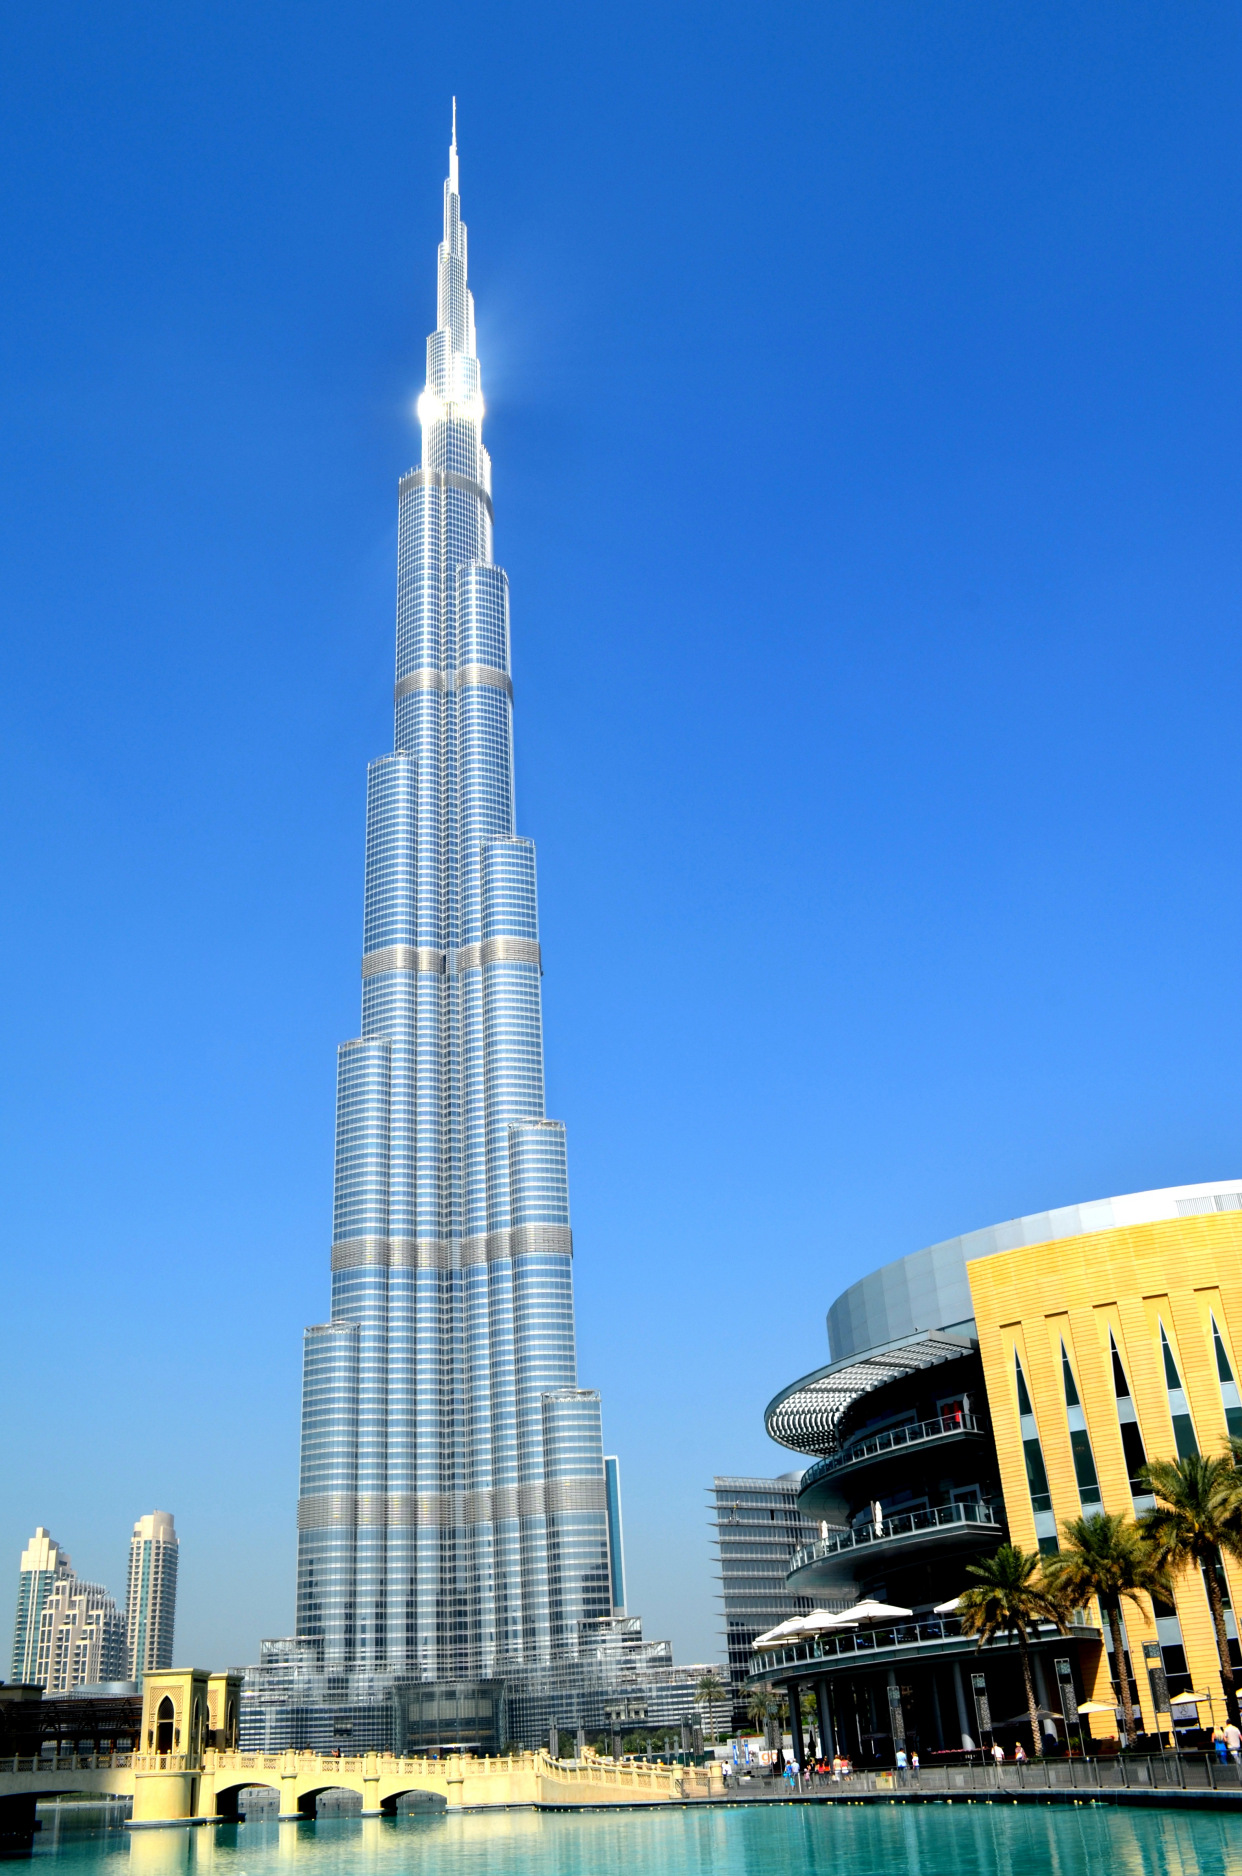 迪拜游记之十:迪拜观光首选,登塔逛mall赏泉游玩世界之最